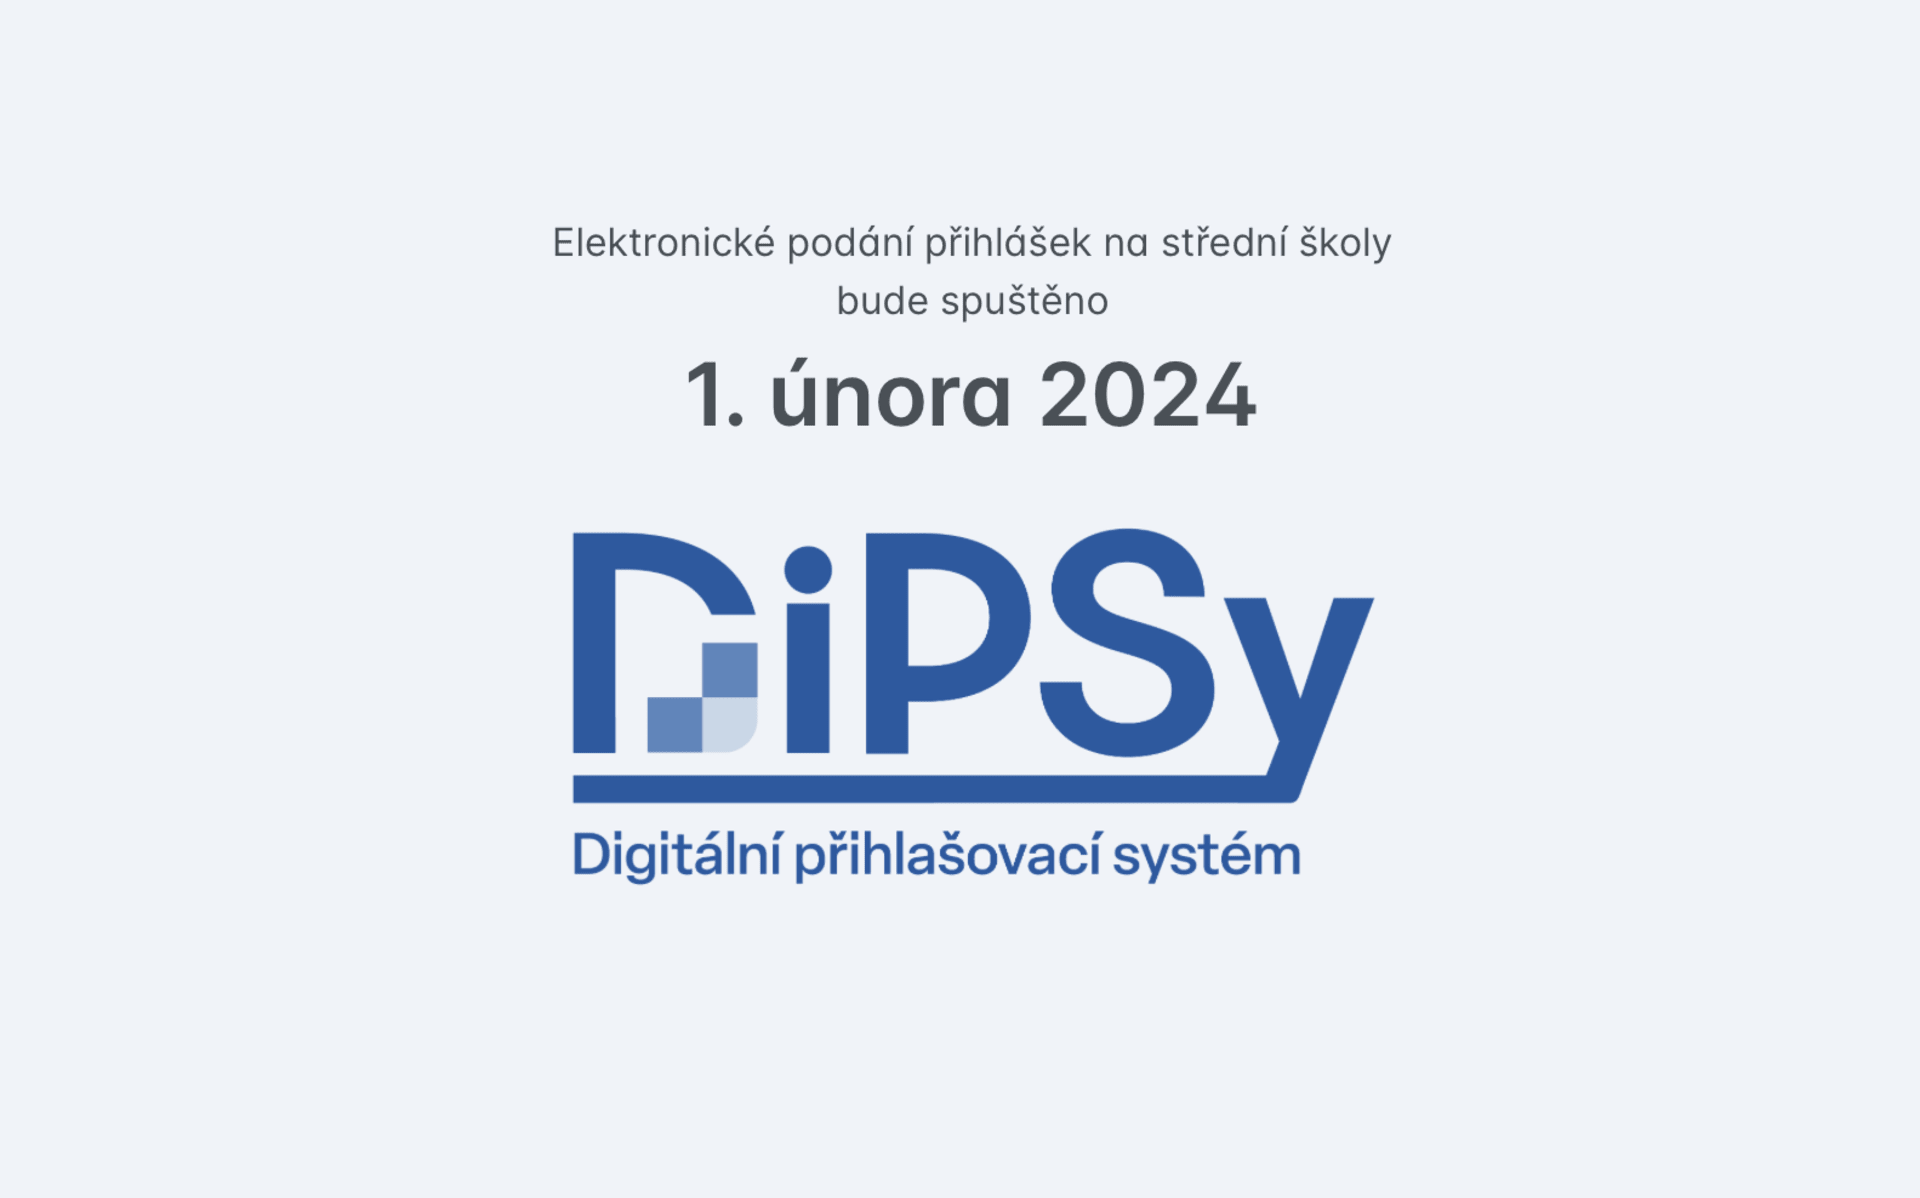 Nový Digitální přihlašovací systém (DiPSy)